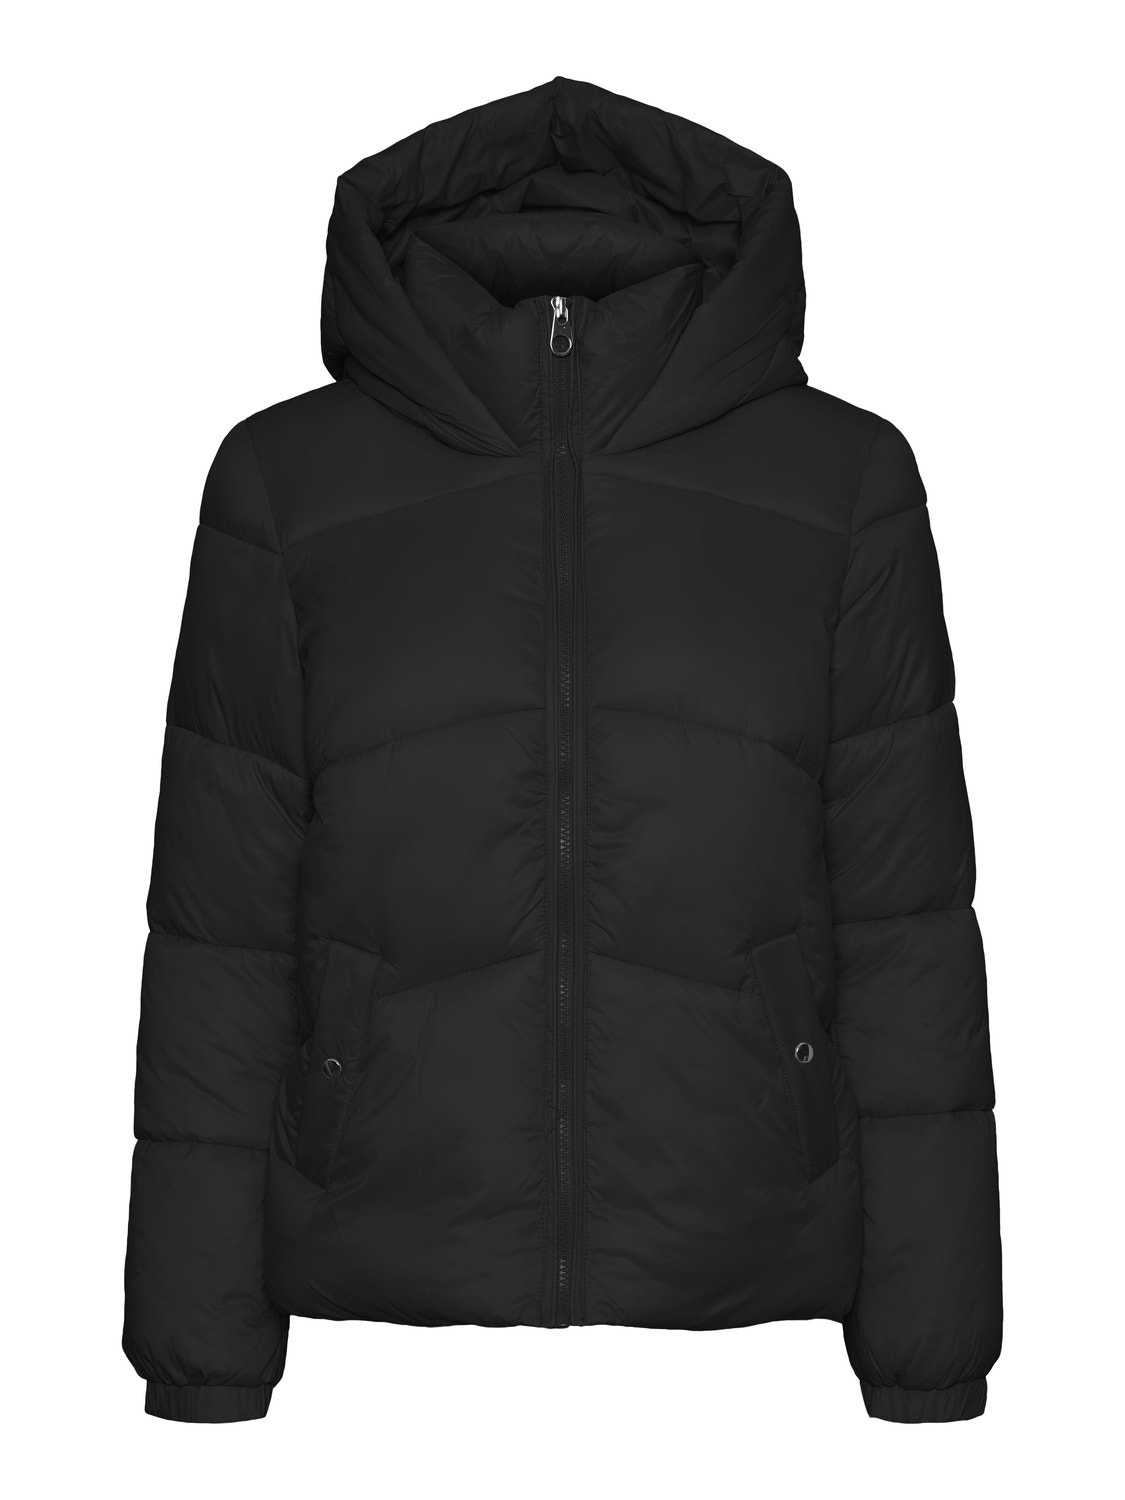 Vero Moda VMUPPSALA Jacket -Black - 10258433